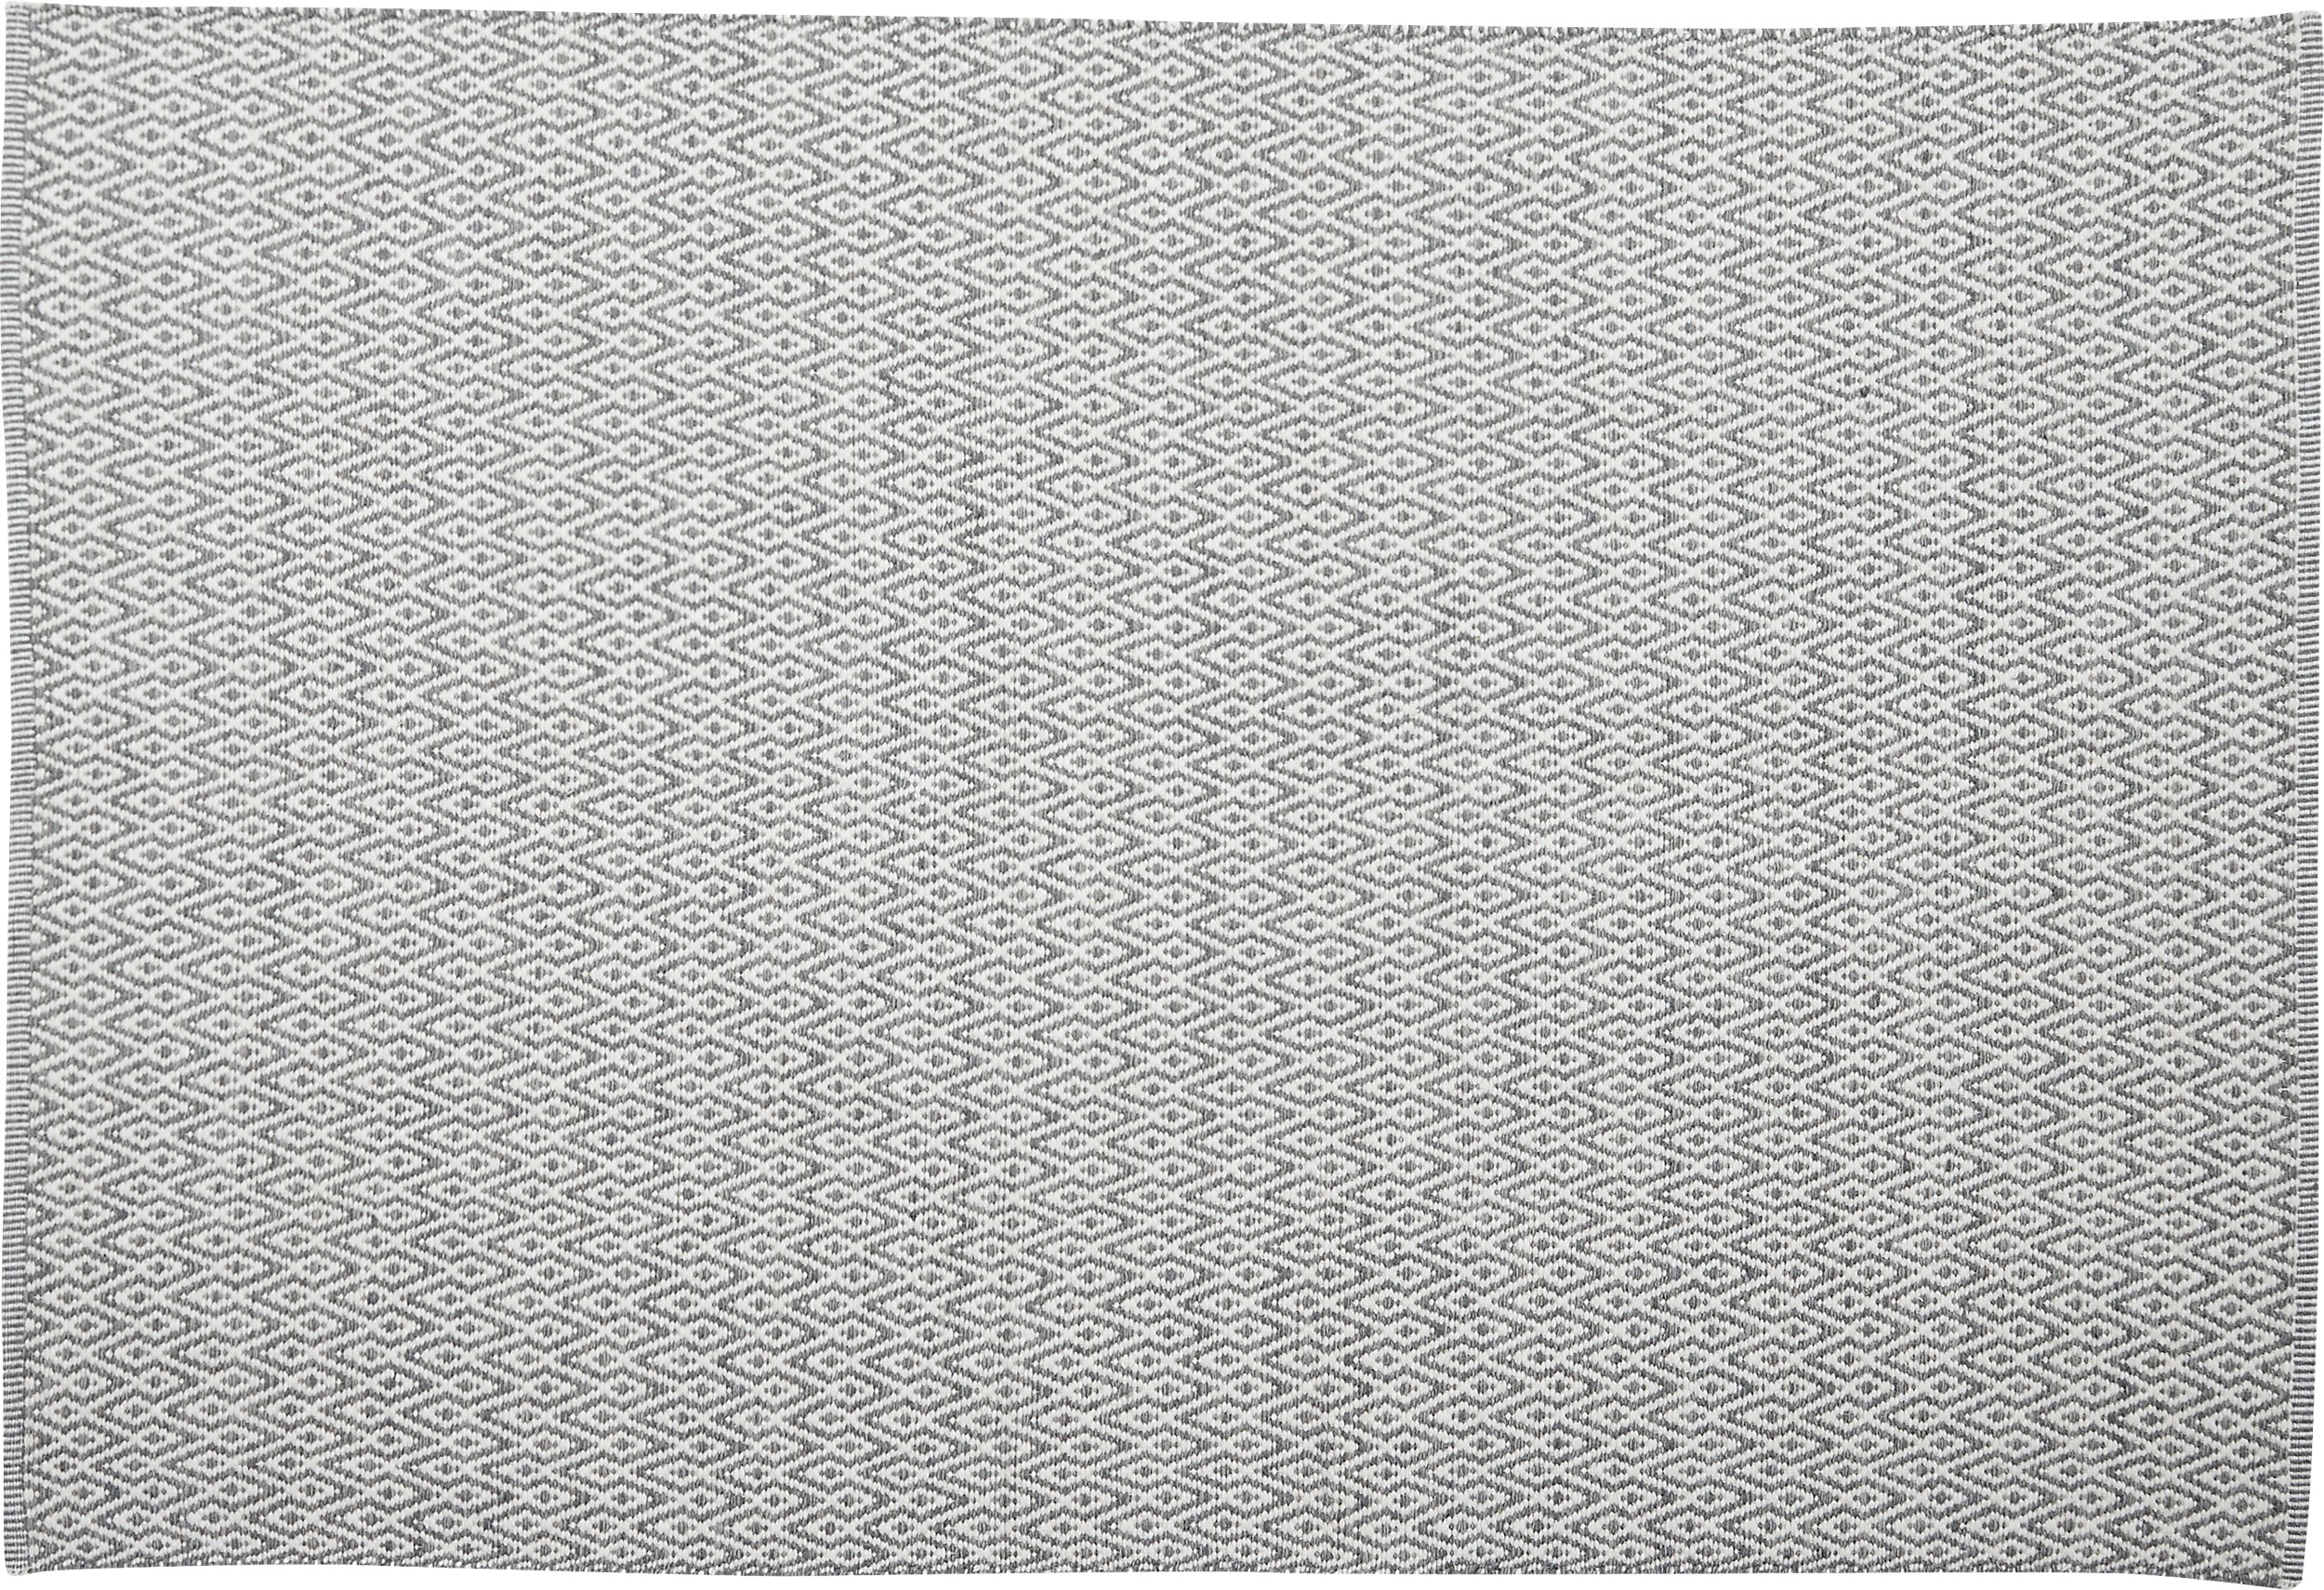 Rold Kelimmatta 200 x 300 cm - Offwhite/grå och diamant form